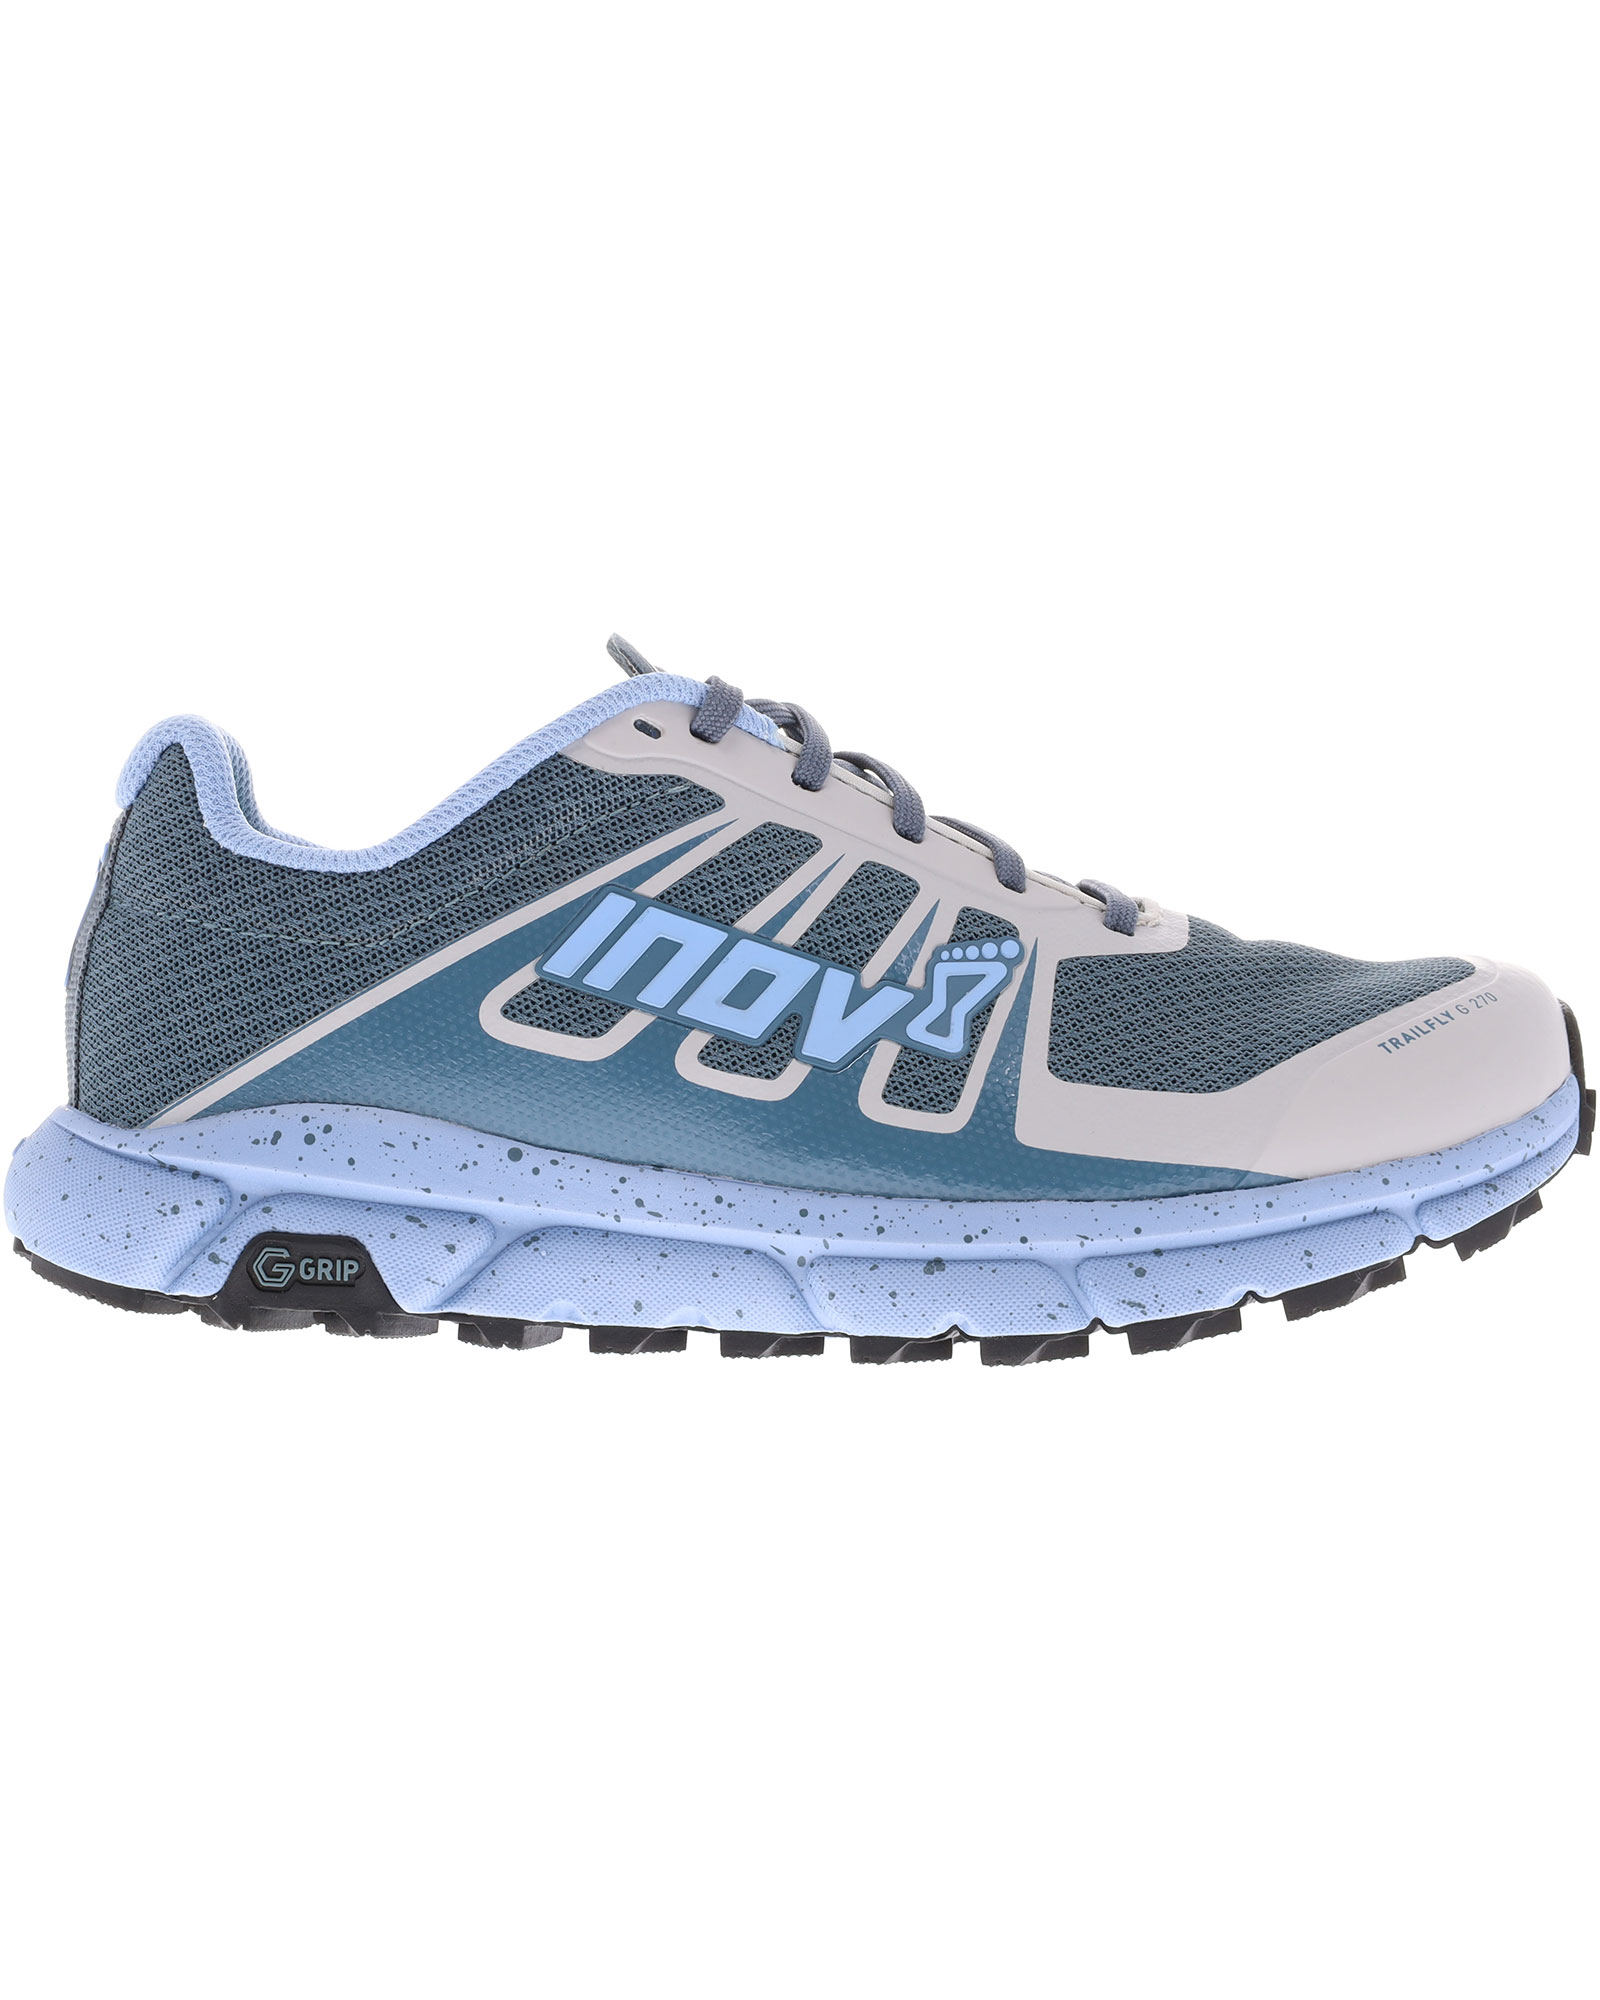 Inov 8 TrailFly G 270 V2 Women’s Trail Shoes - Blue/Grey UK 8